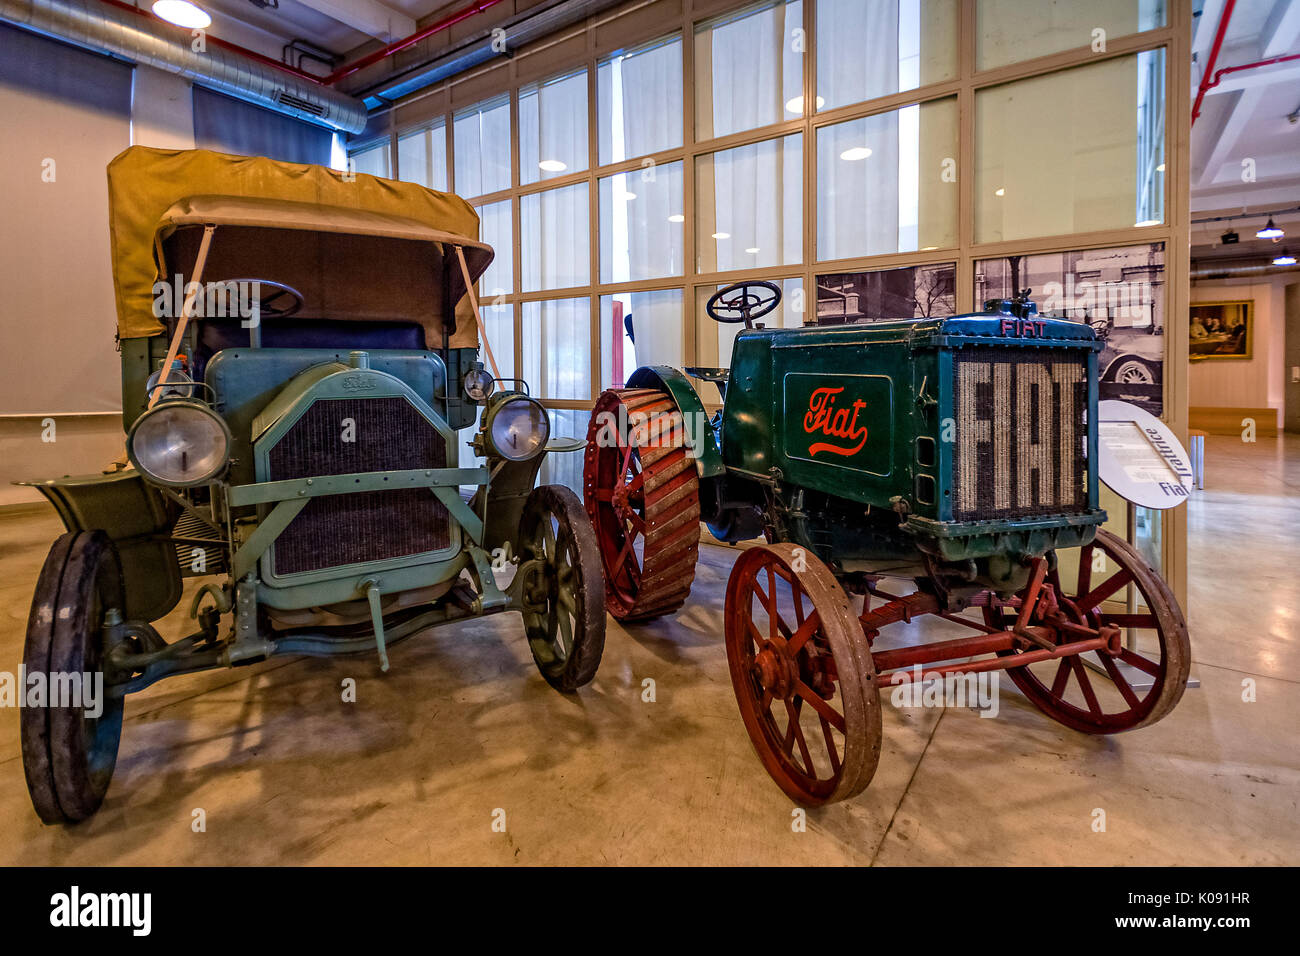 Le Fiat Centro Storico est un musée et archives d'entreprise basée à Turin. Expose des voitures, des avions, des trains, des tracteurs, camions, vélos, machines à laver, réfrigérateurs avec marque Fiat -le tracteur et chariot Banque D'Images